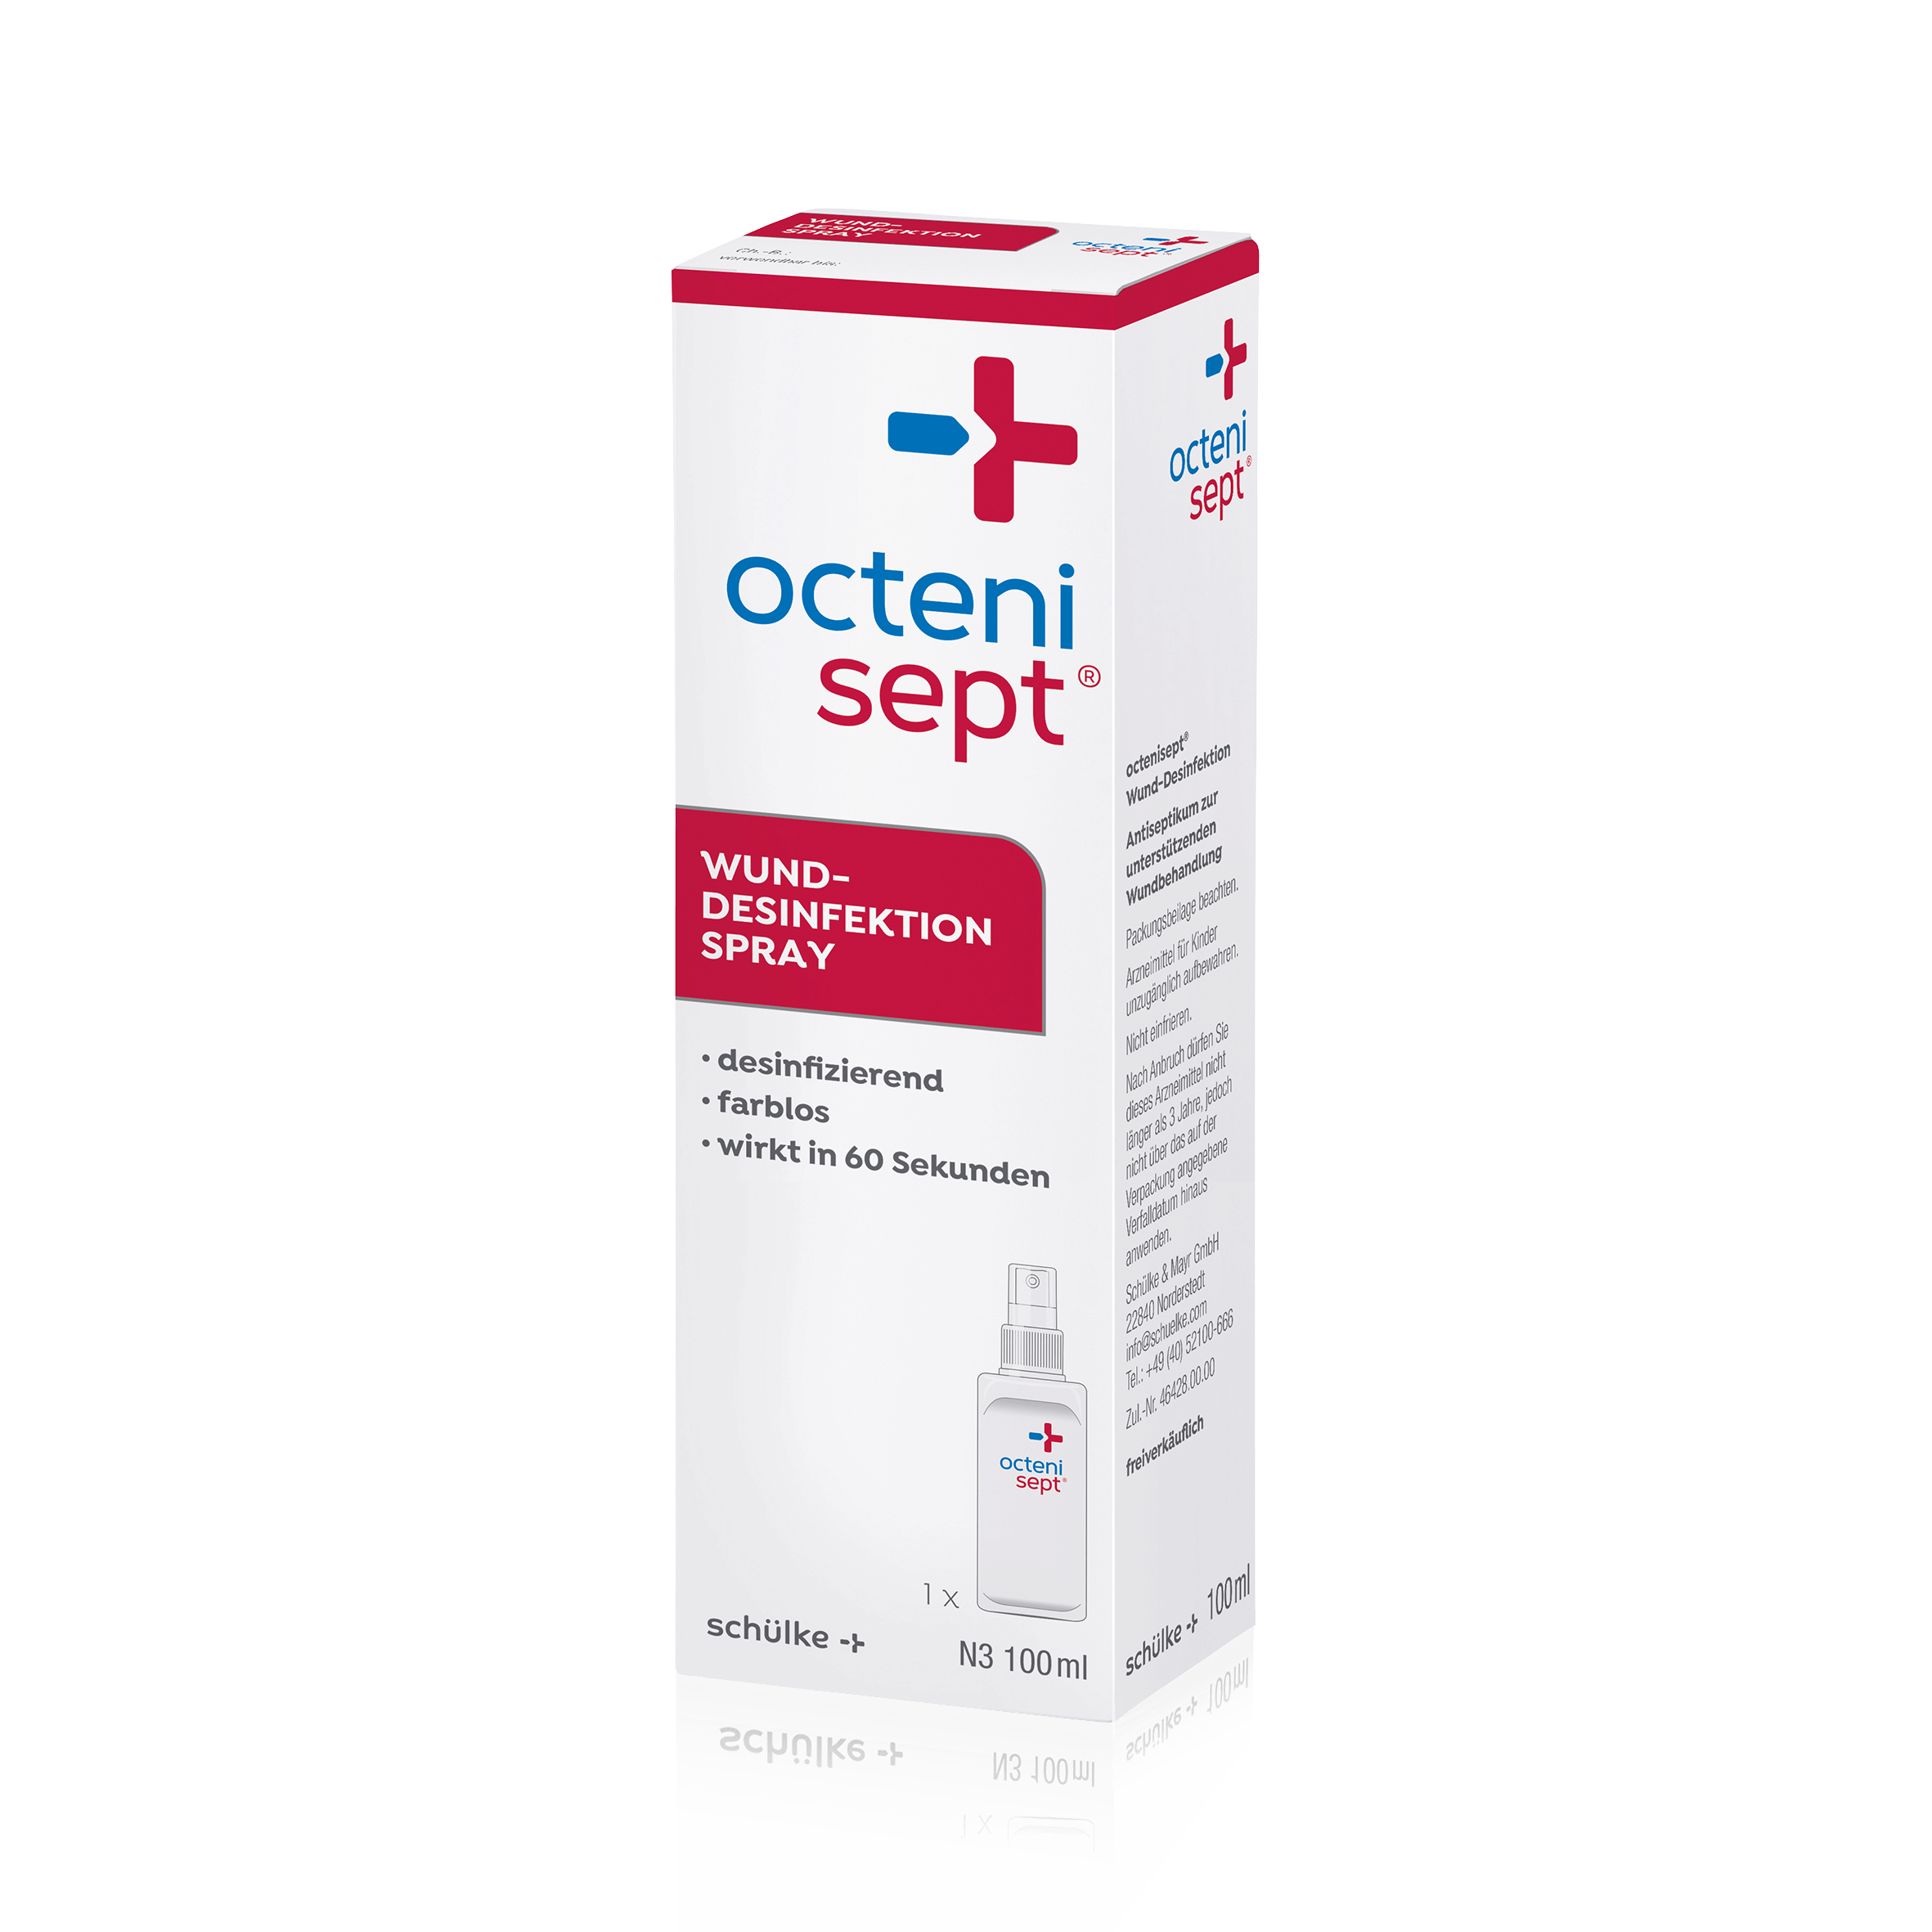 octenisept-wund-desinfektion-spray_11999_2